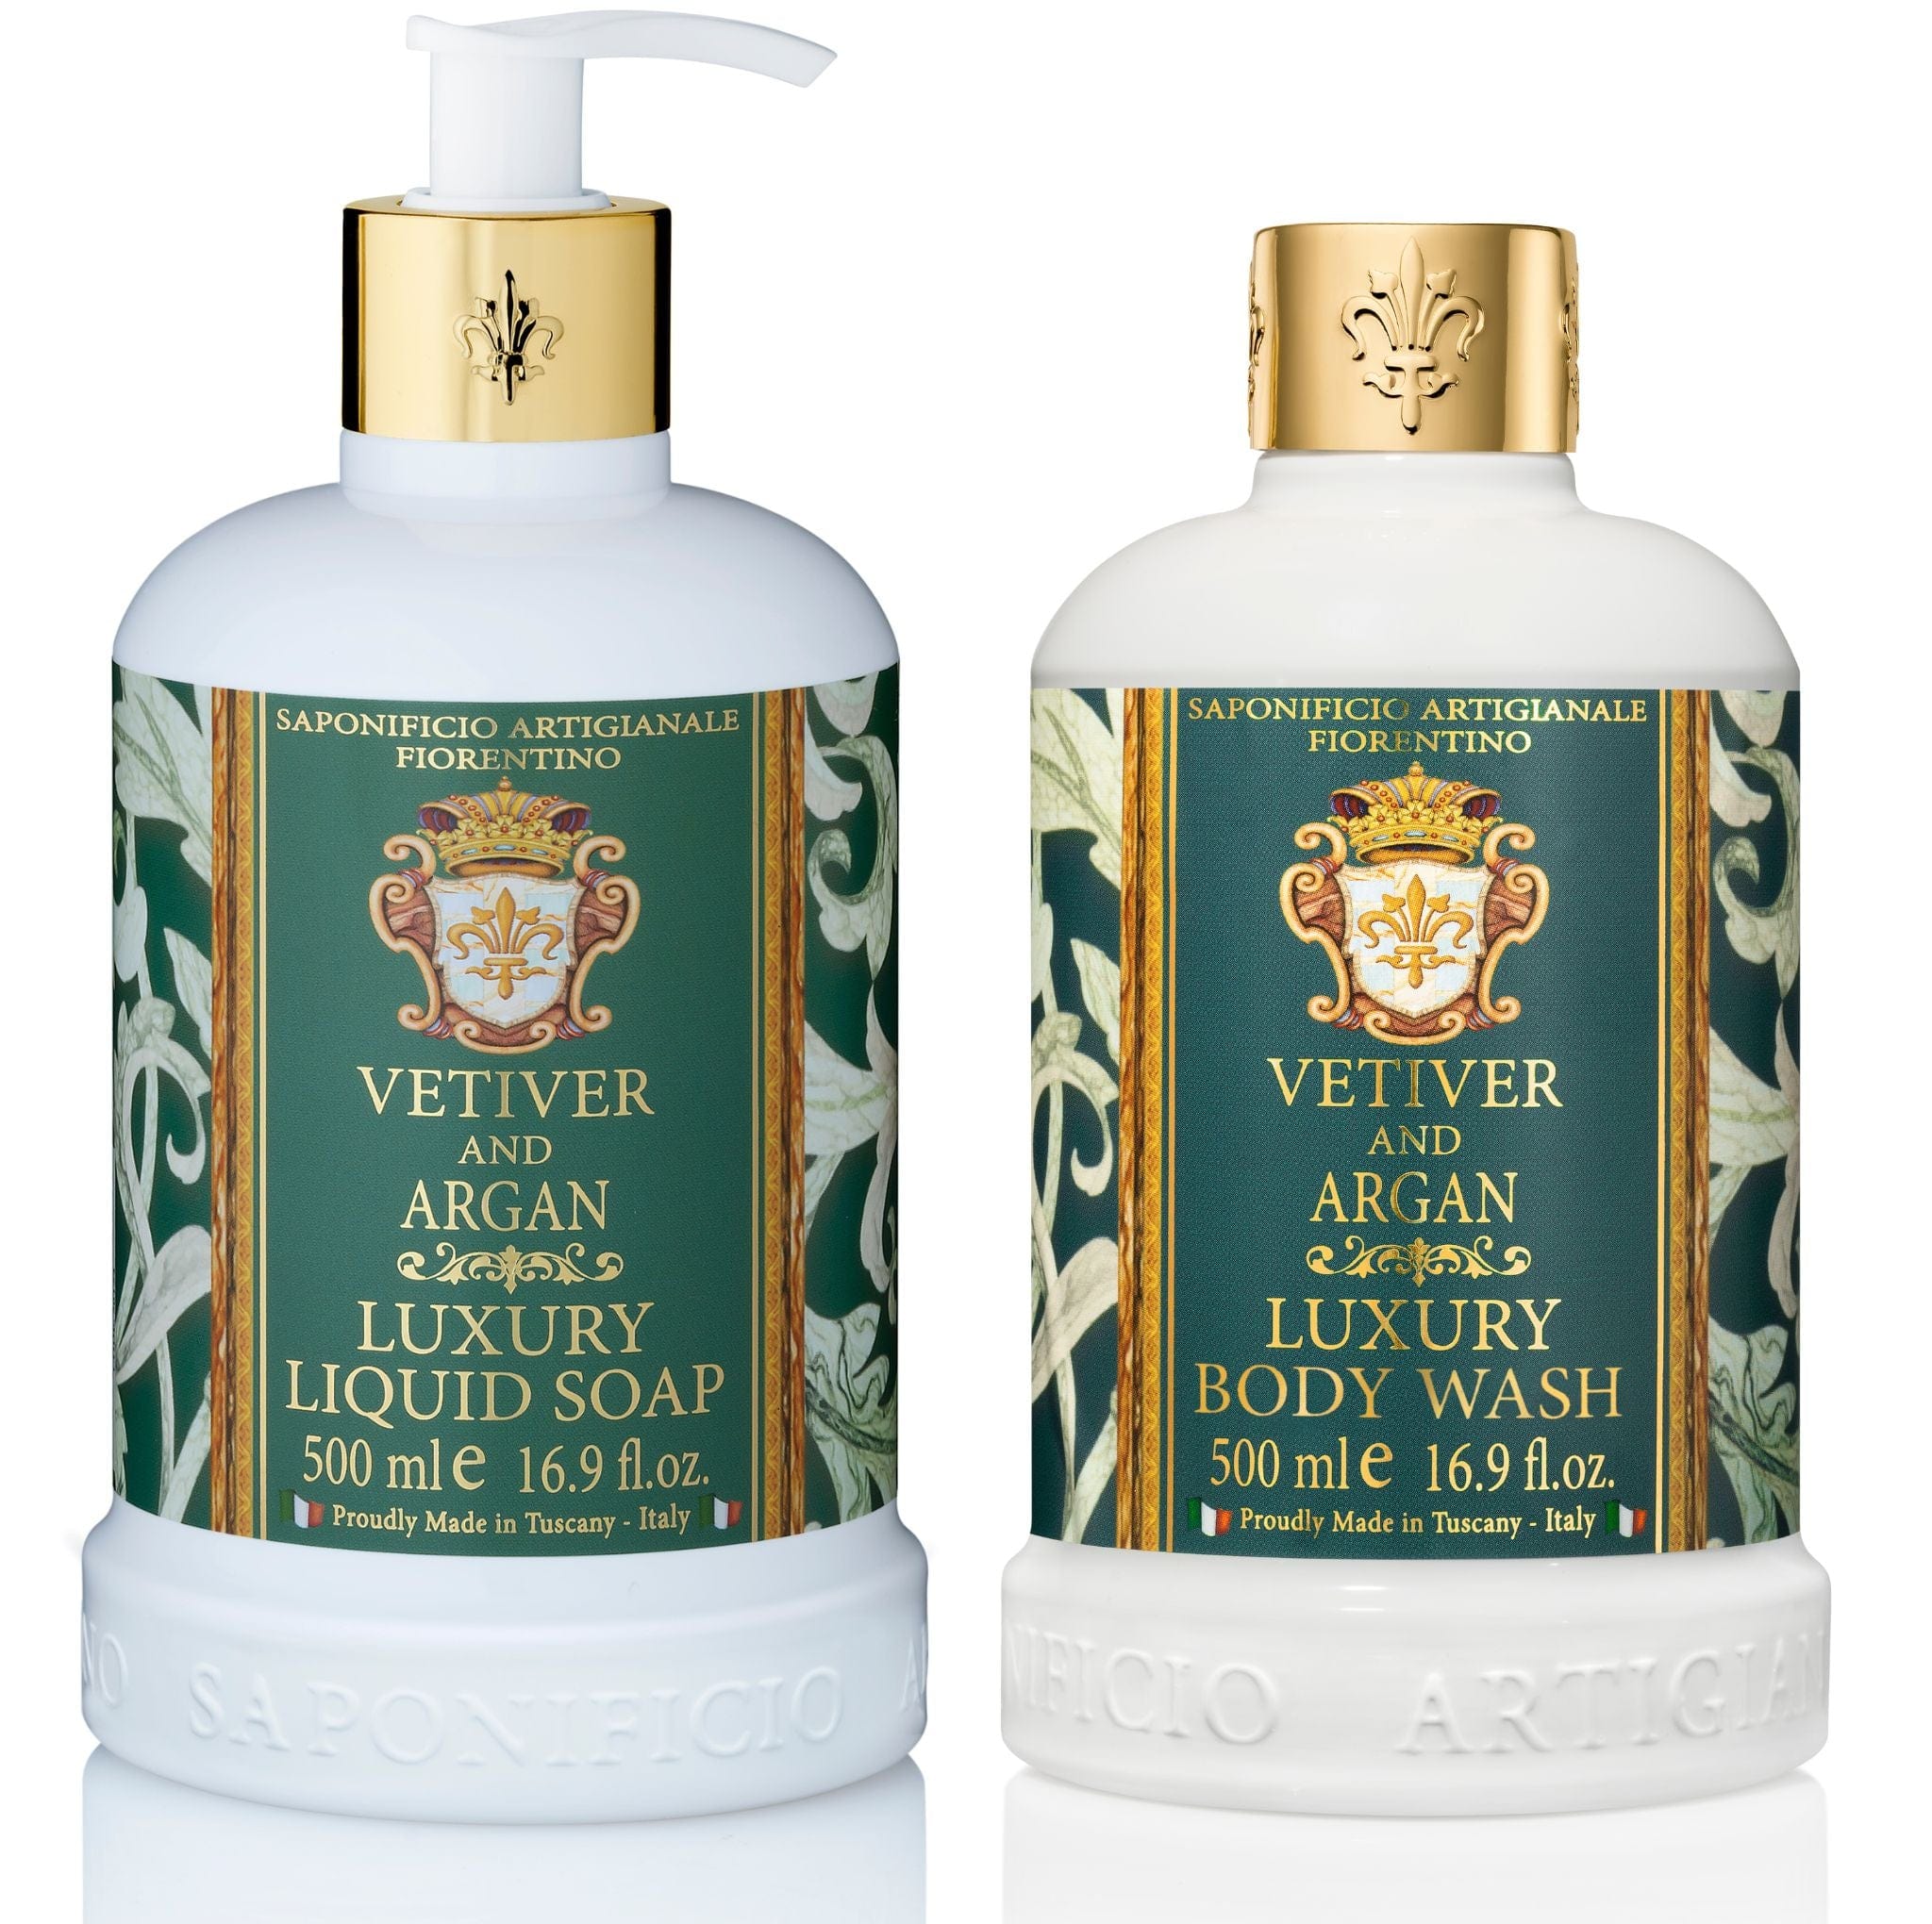 Saponificio Artigianale Fiorentino Liquid Soap Saponificio Artigianale Fiorentino Vetiver & Argan Hand Wash & Body Wash Luxury Italian Spap Brand